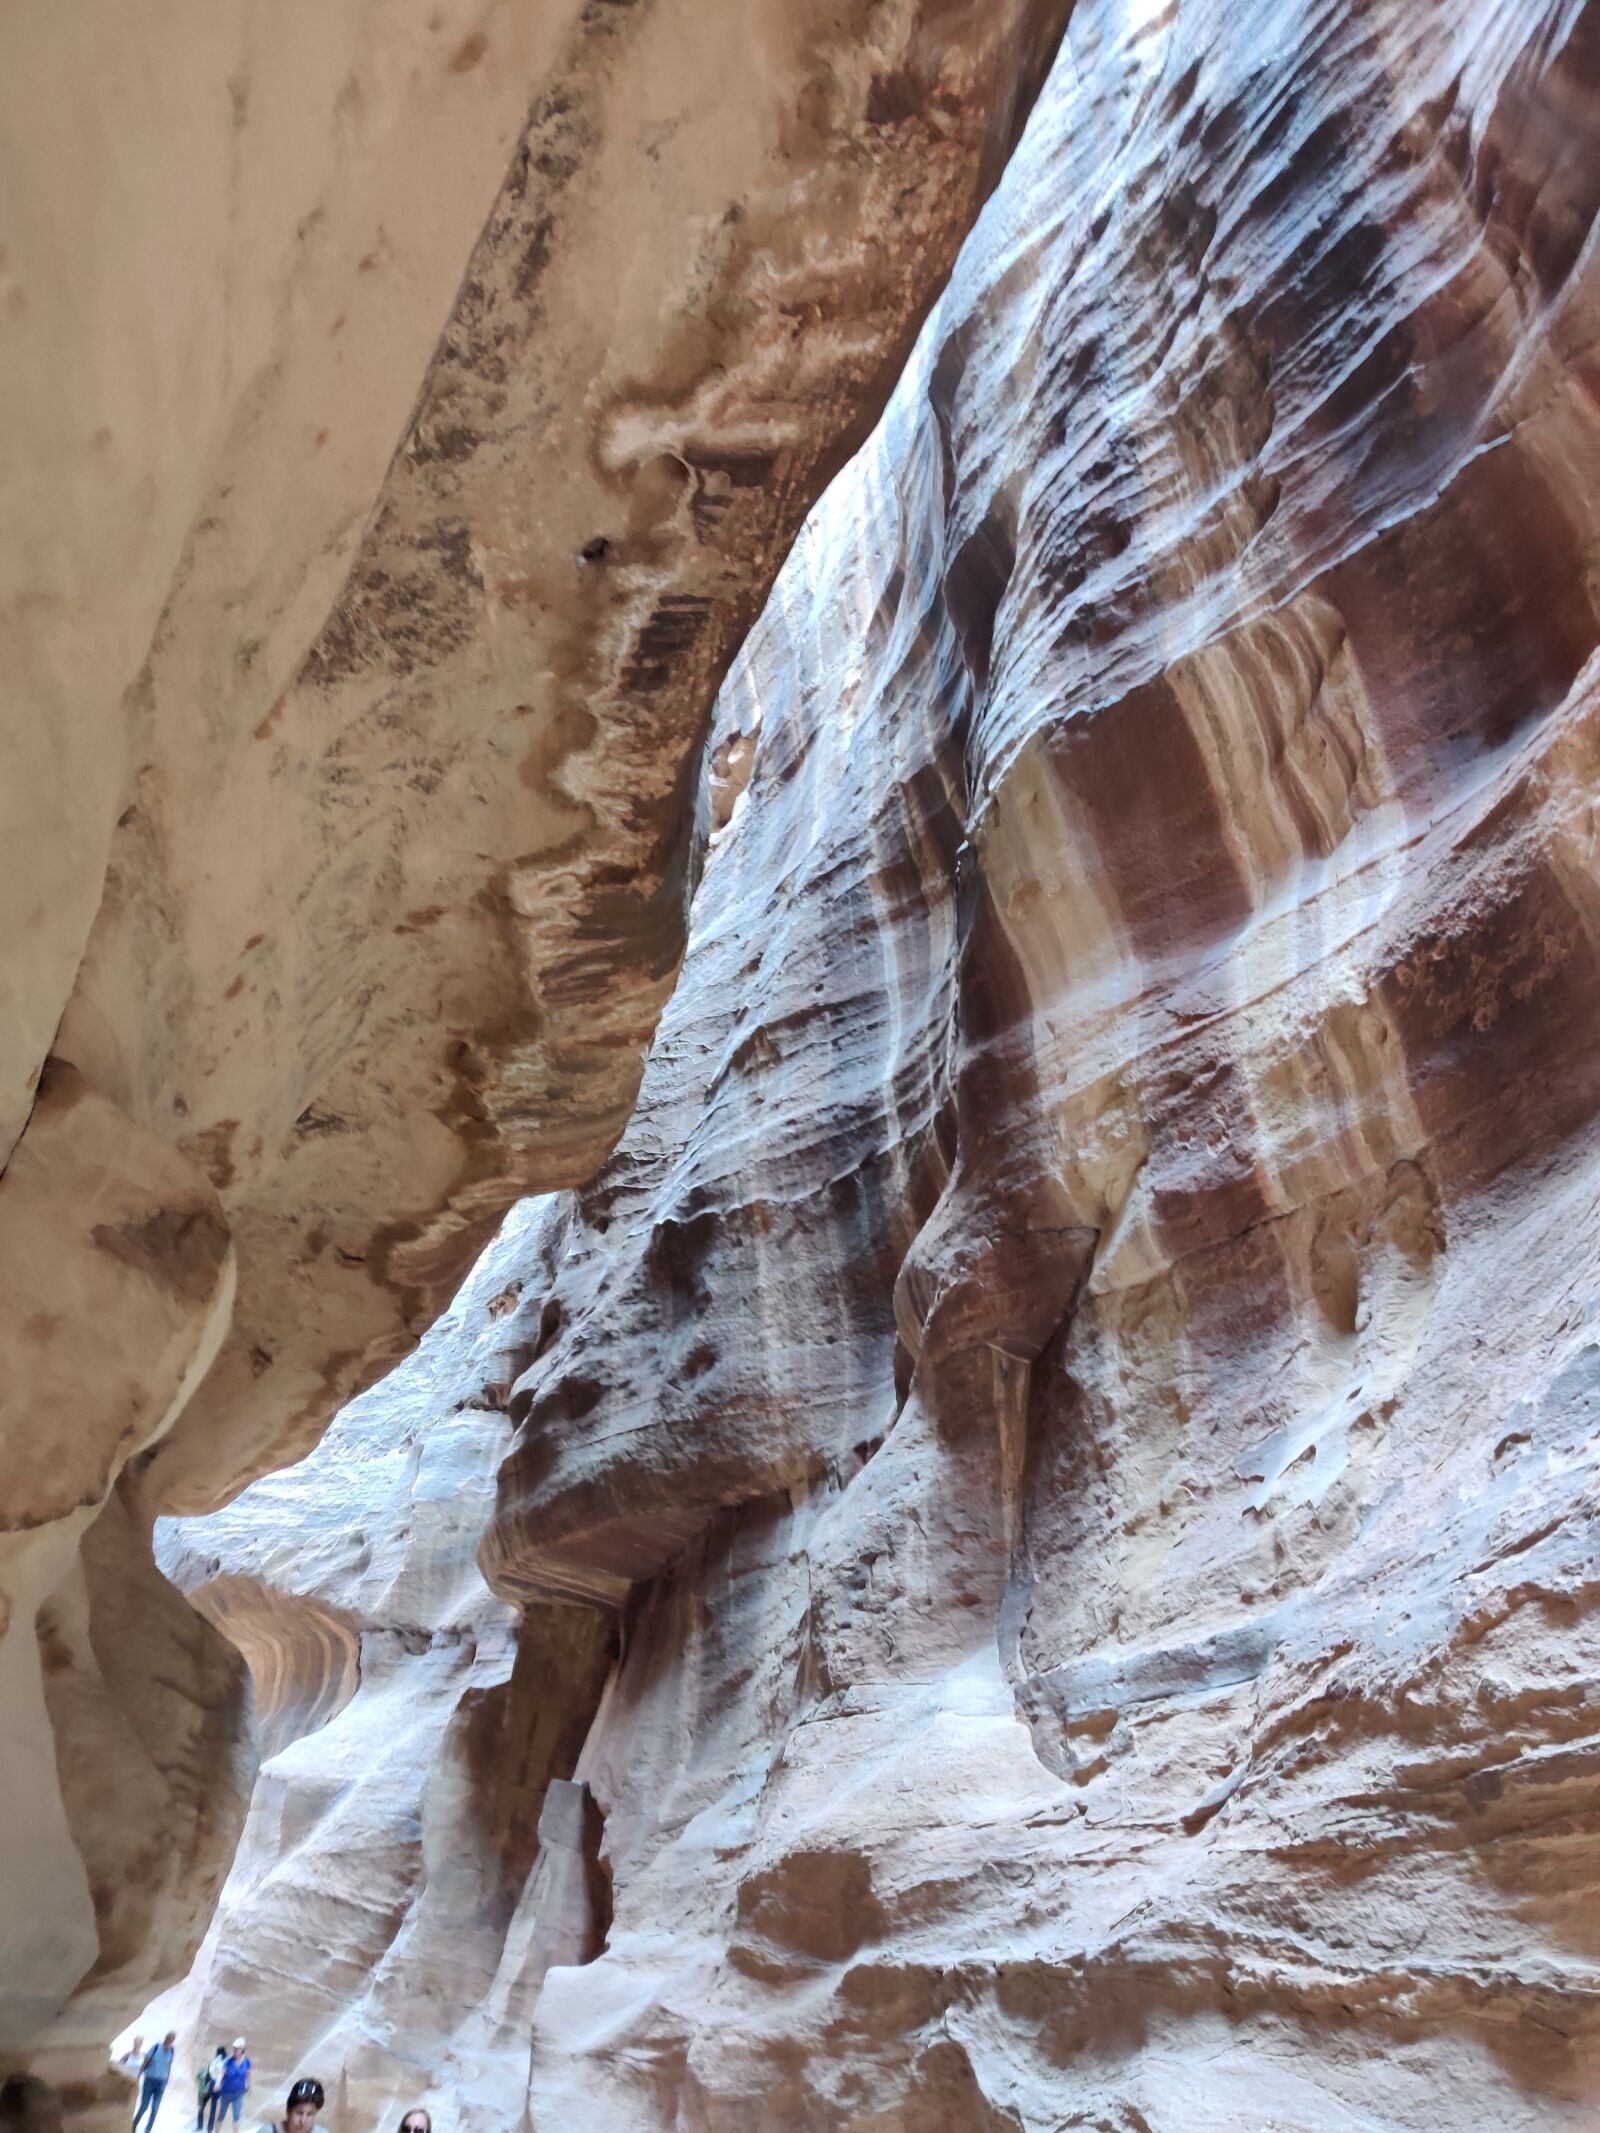 OnePlus GM1911 sample photo. Petra, canyon, jordan photography